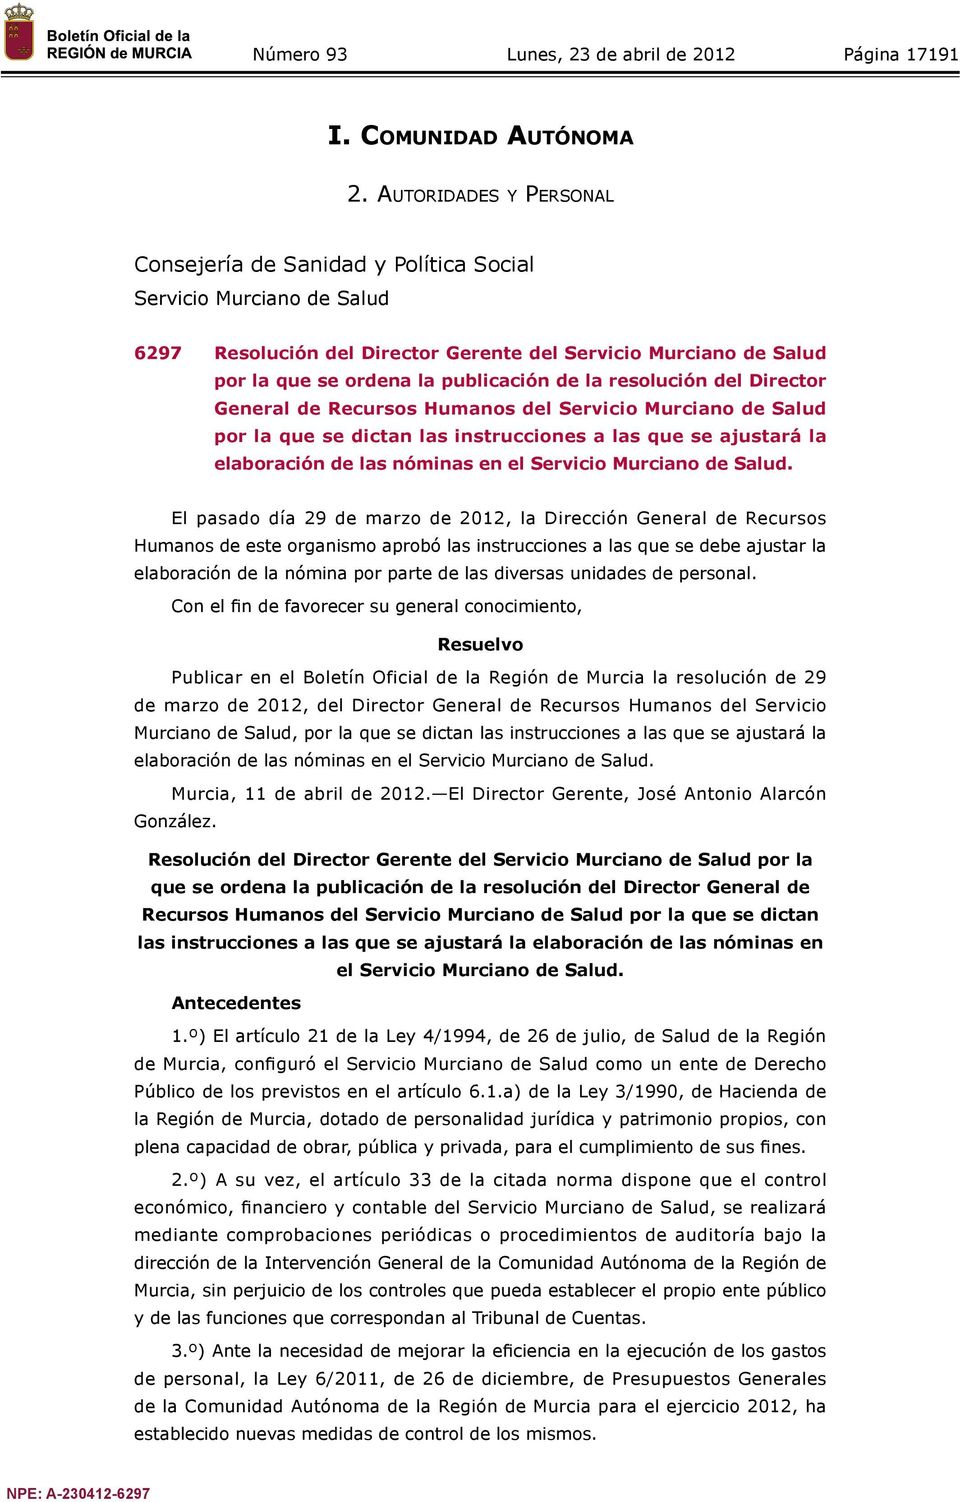 resolución del Director General de Recursos Humanos del Servicio Murciano de Salud por la que se dictan las instrucciones a las que se ajustará la elaboración de las nóminas en el Servicio Murciano